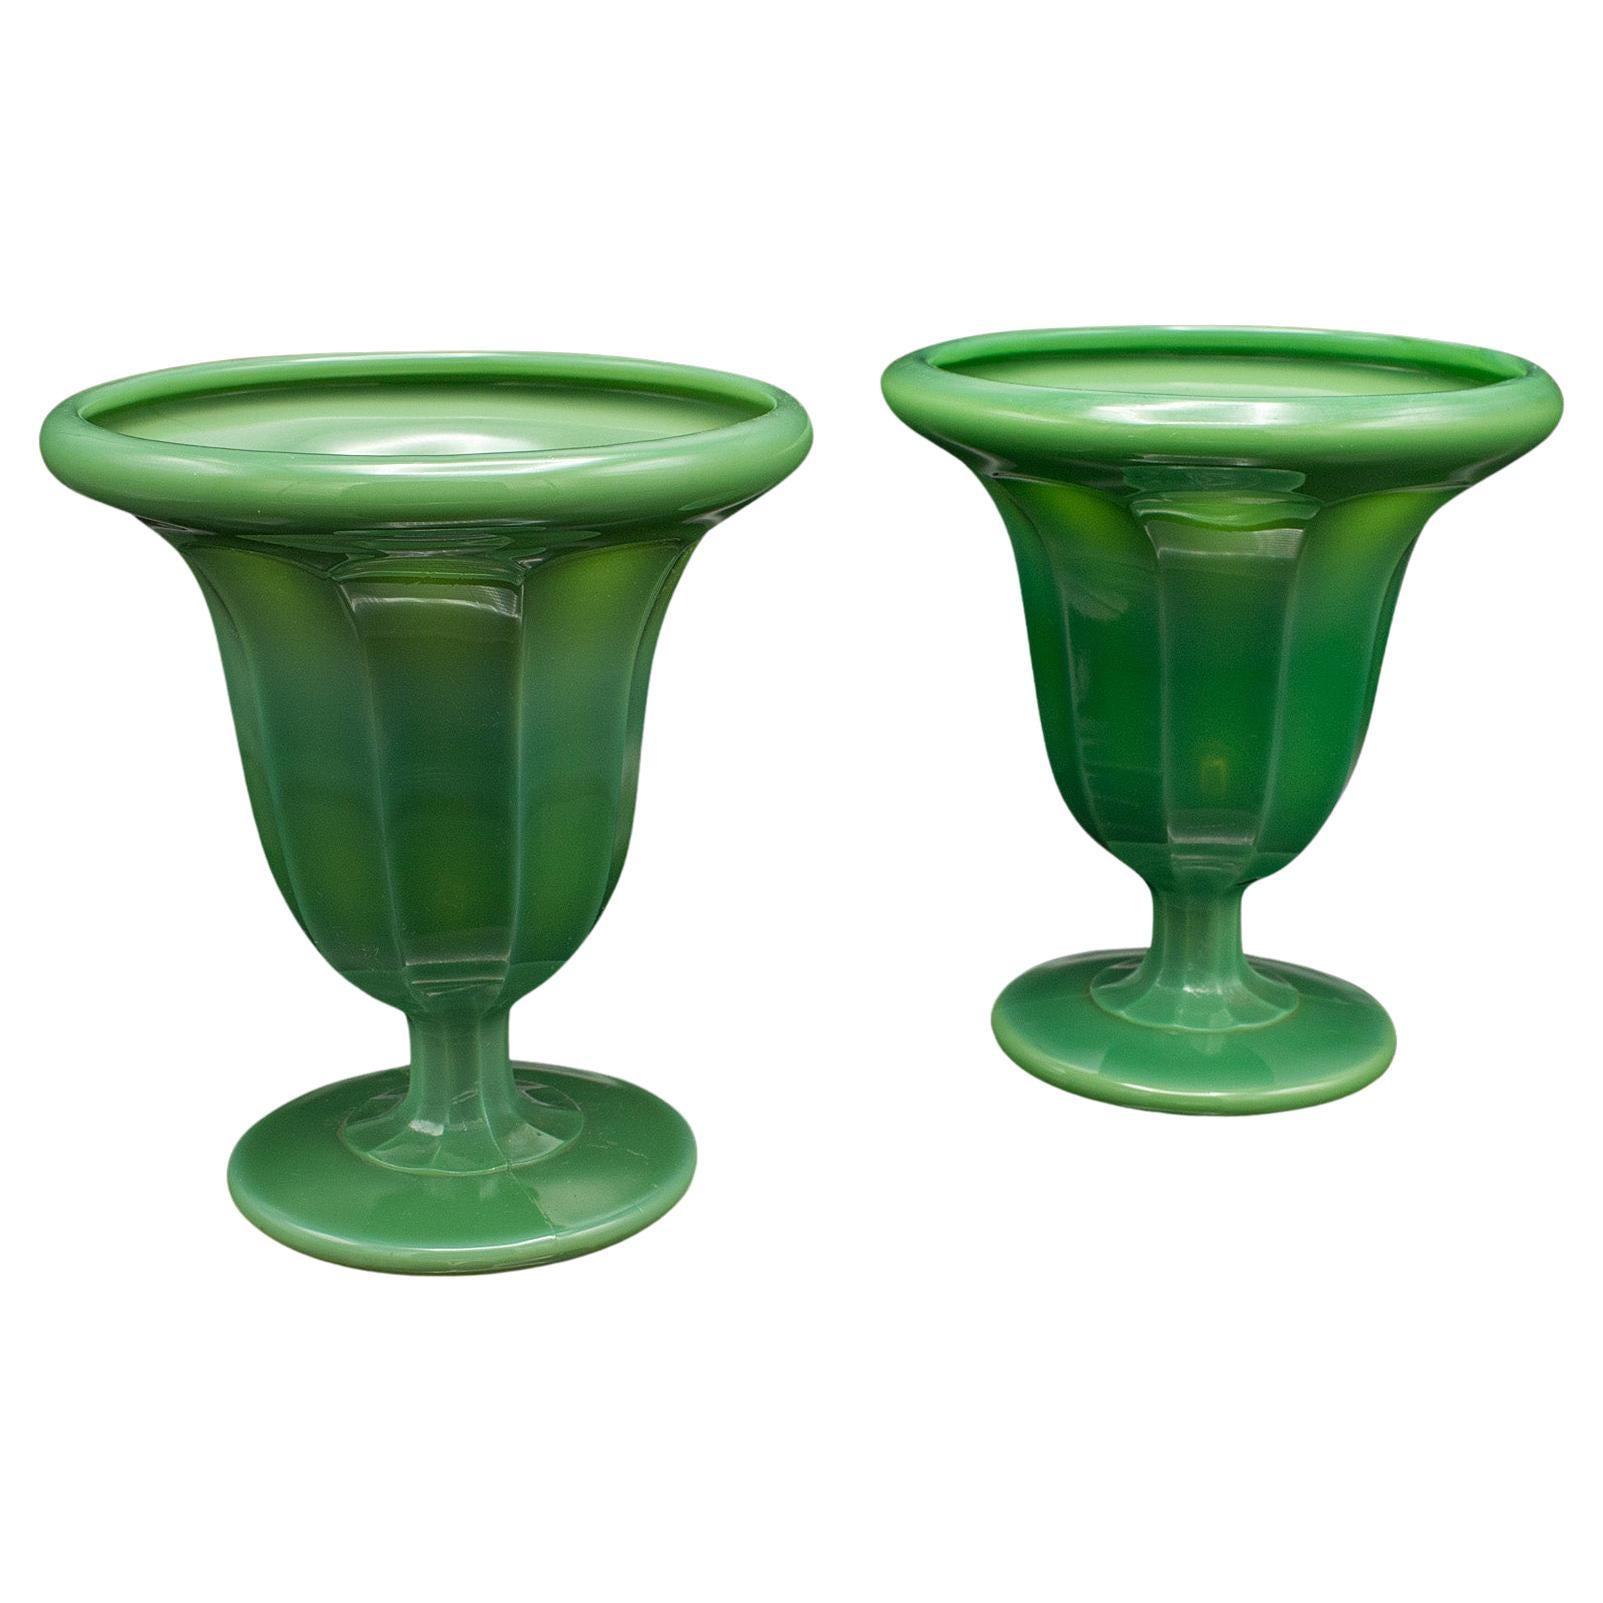 Pair Of Vintage Decorative Vases, English, Glass, Plant Pots, Art Deco, C.1930 For Sale